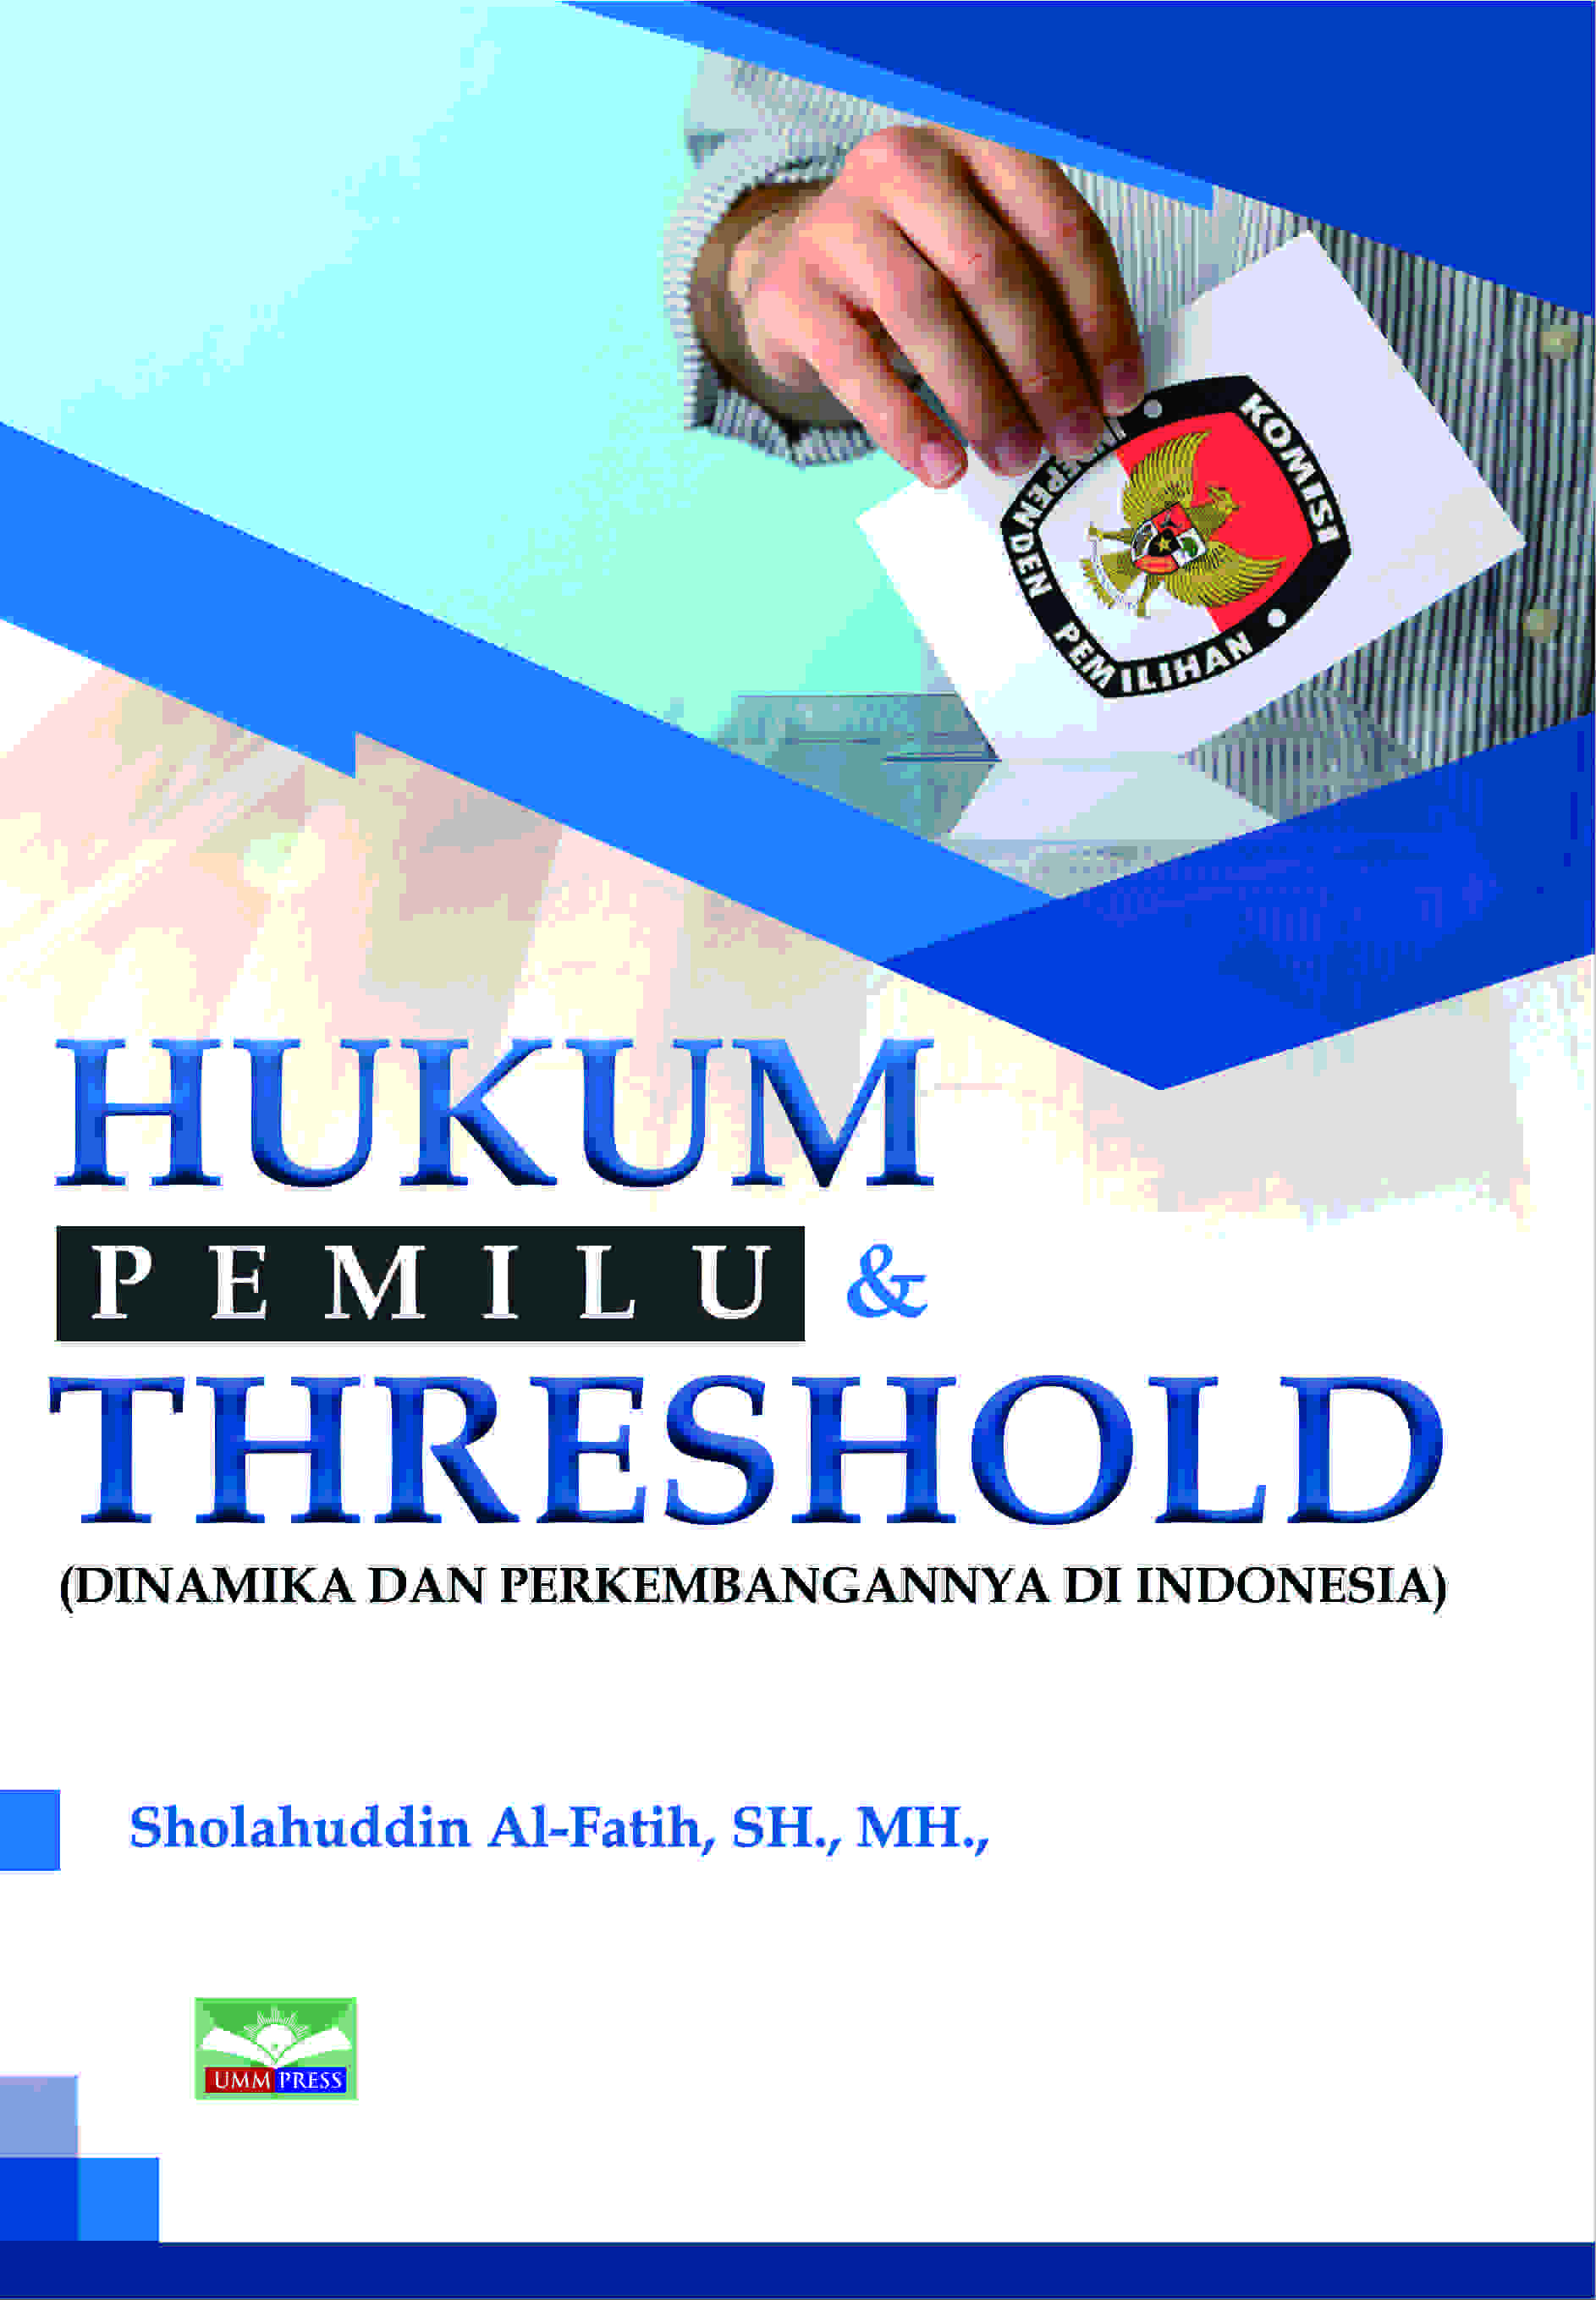 HUKUM PEMILU DAN THRESHOLD: DINAMIKA DAN PERKEMBANGANNYA DI INDONESIA